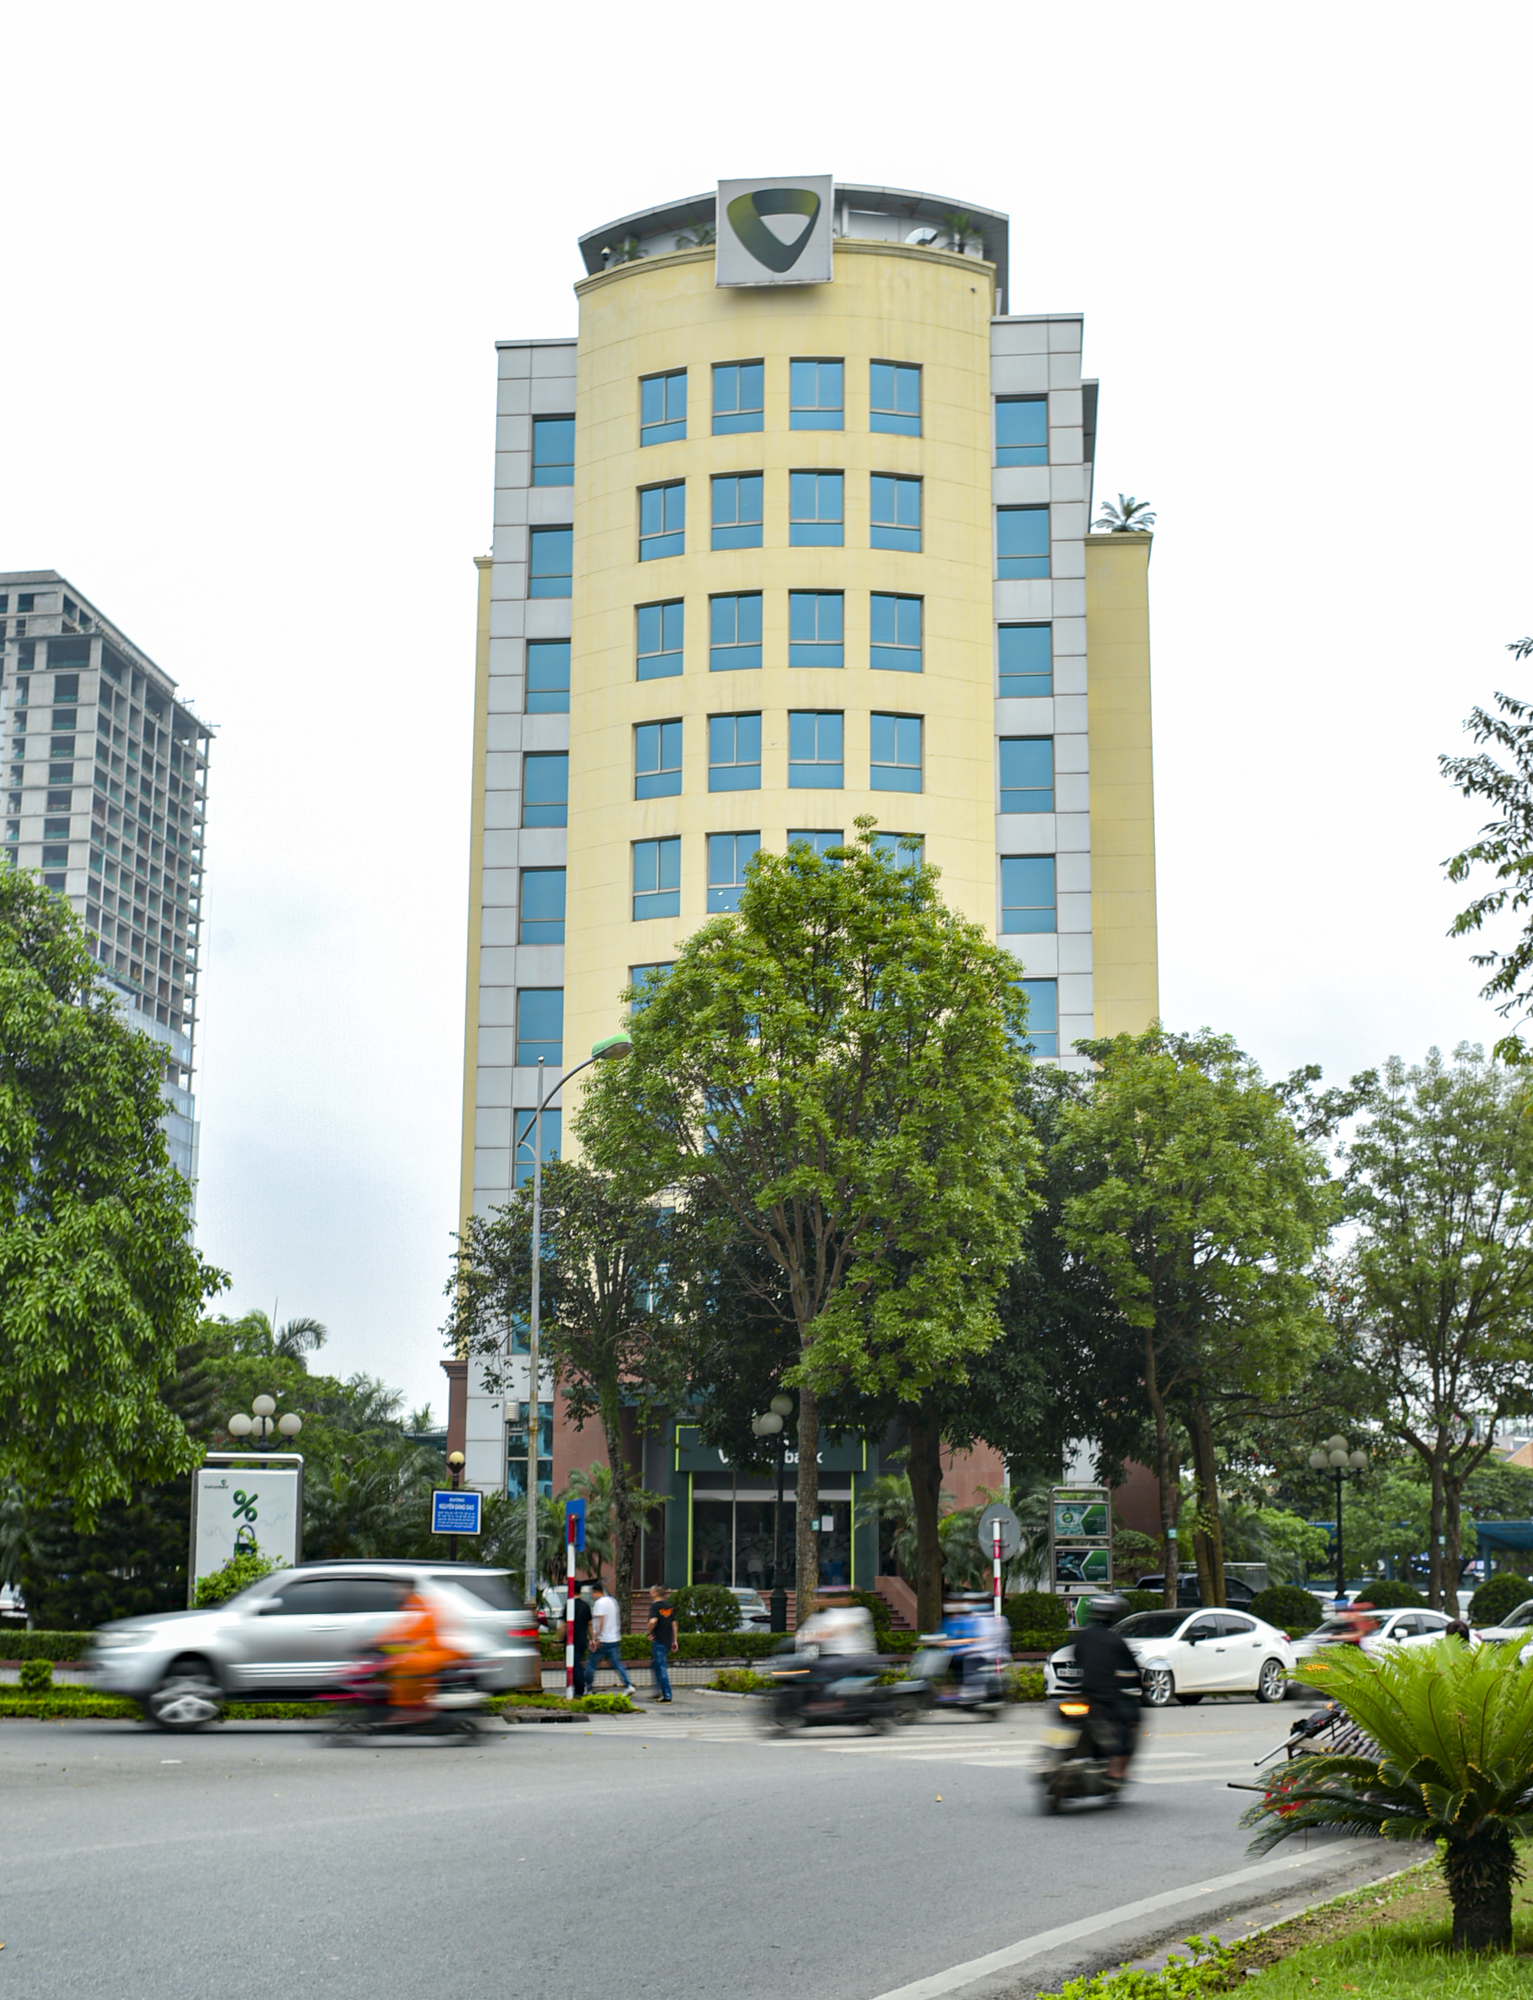 Khu vực trung tâm của trung tâm tỉnh sắp lên thành phố: Có khu hành chính độc đáo bậc nhất Việt Nam; Vingroup, Vietcombank phô diễn vị thế- Ảnh 6.